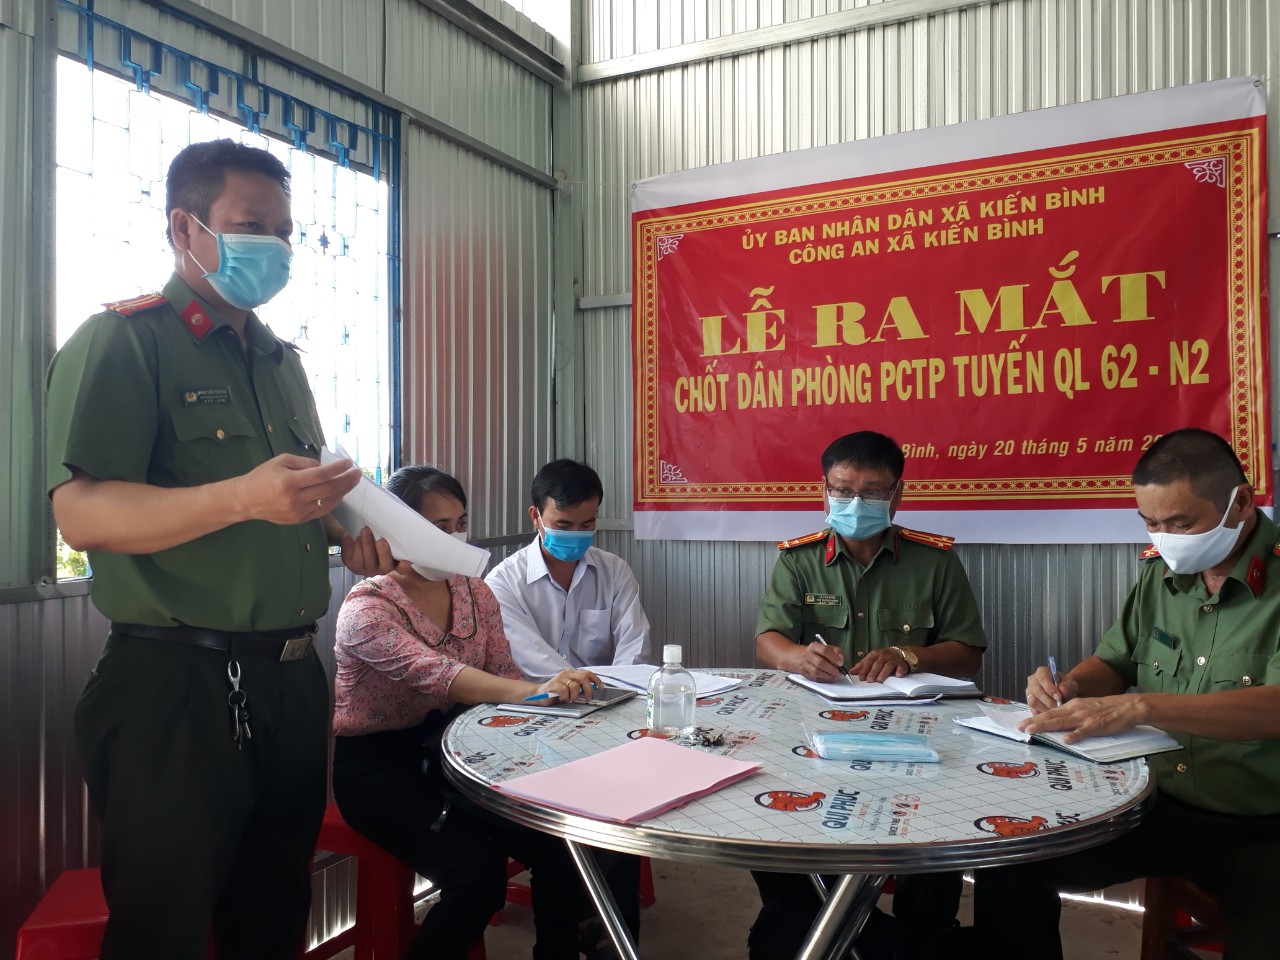 Chốt dân phòng phòng, chống tội phạm tuyến Quốc lộ 62, N2 trên địa bàn xã Kiến Bình